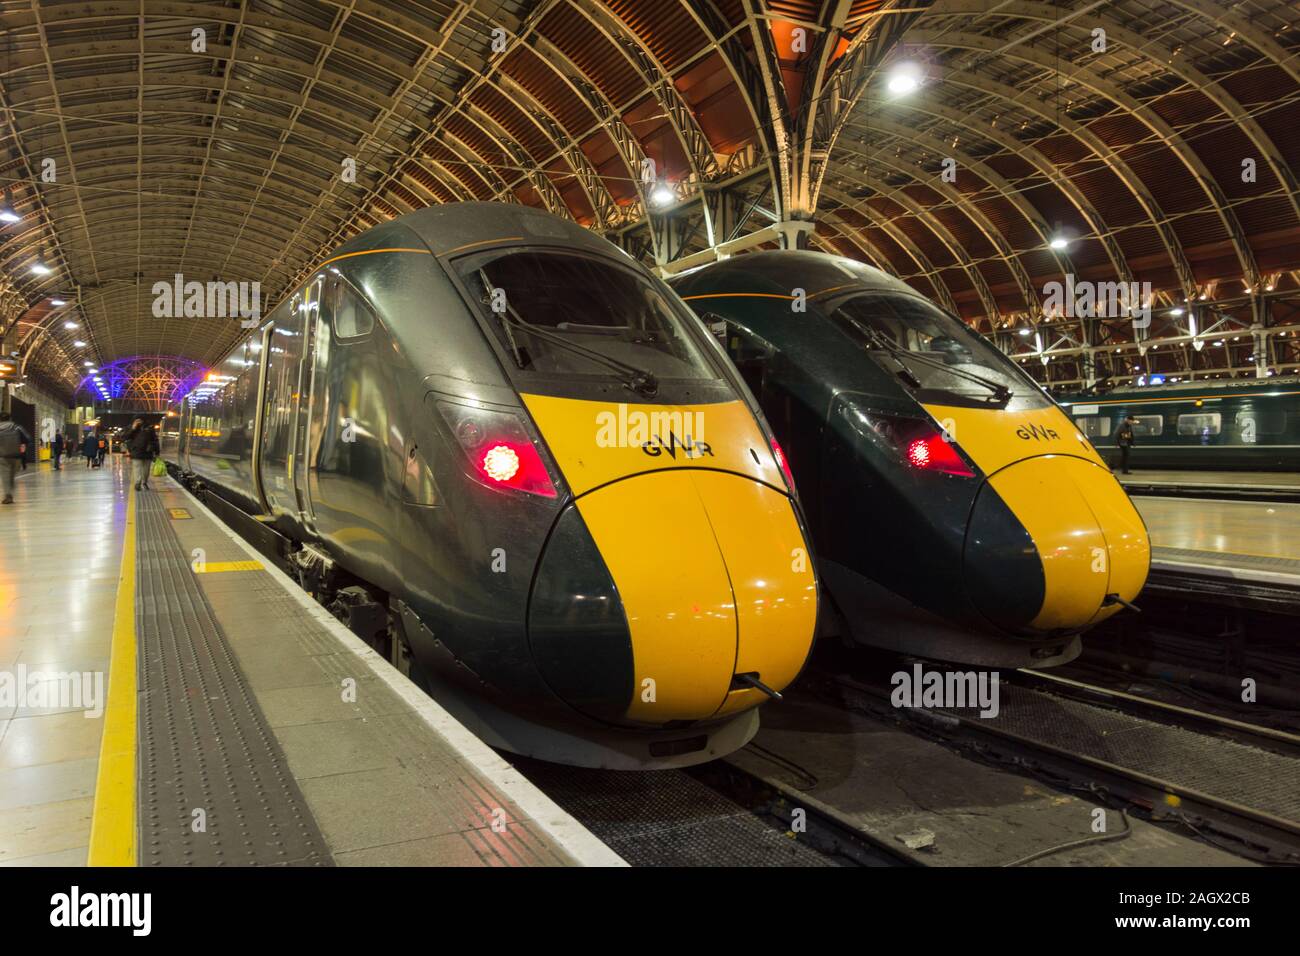 The windscreens of Hitachi Class 800 Intercity Express Trains at Paddington Station, London, UK Stock Photo